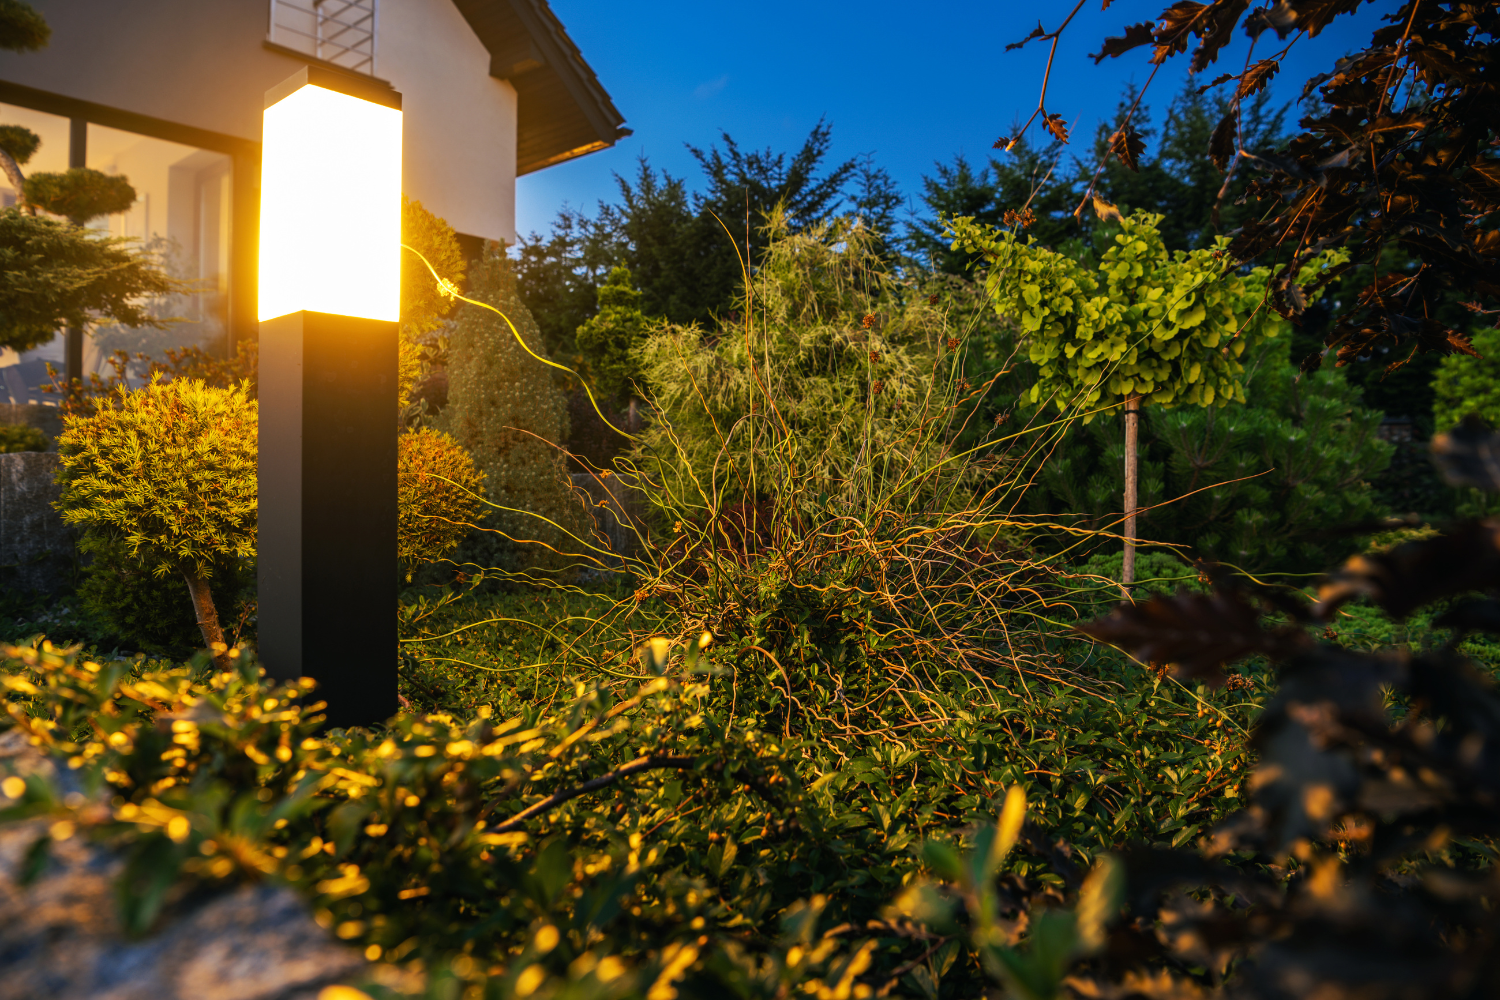 zielopny ogród nocą, oświetlony przez pojedynczą stojącą lampę w kształcie prostokąta